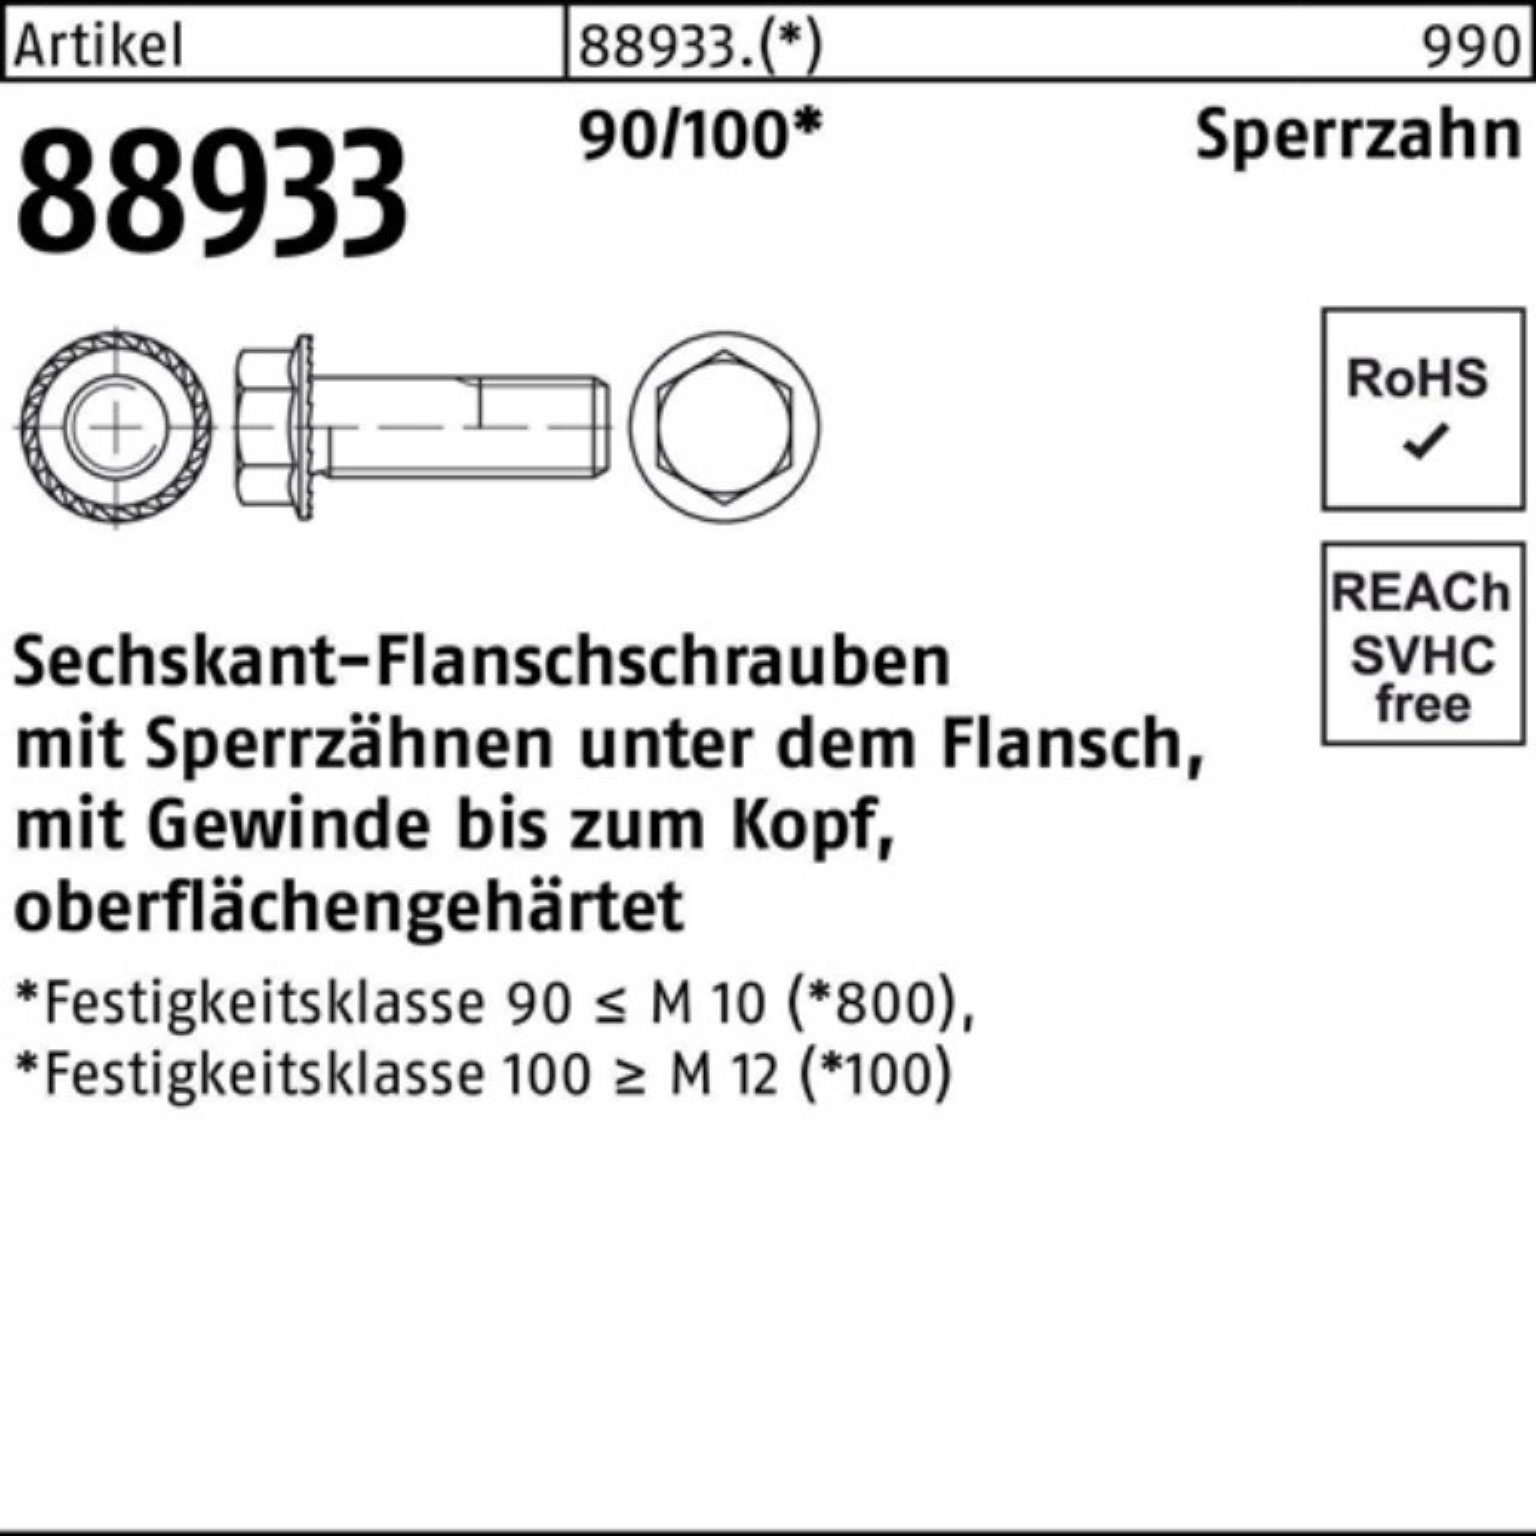 Pack 16 Schraube Sperrz. 500er 90/100 R VG 88933 5 M6x Reyher Sechskantflanschschraube